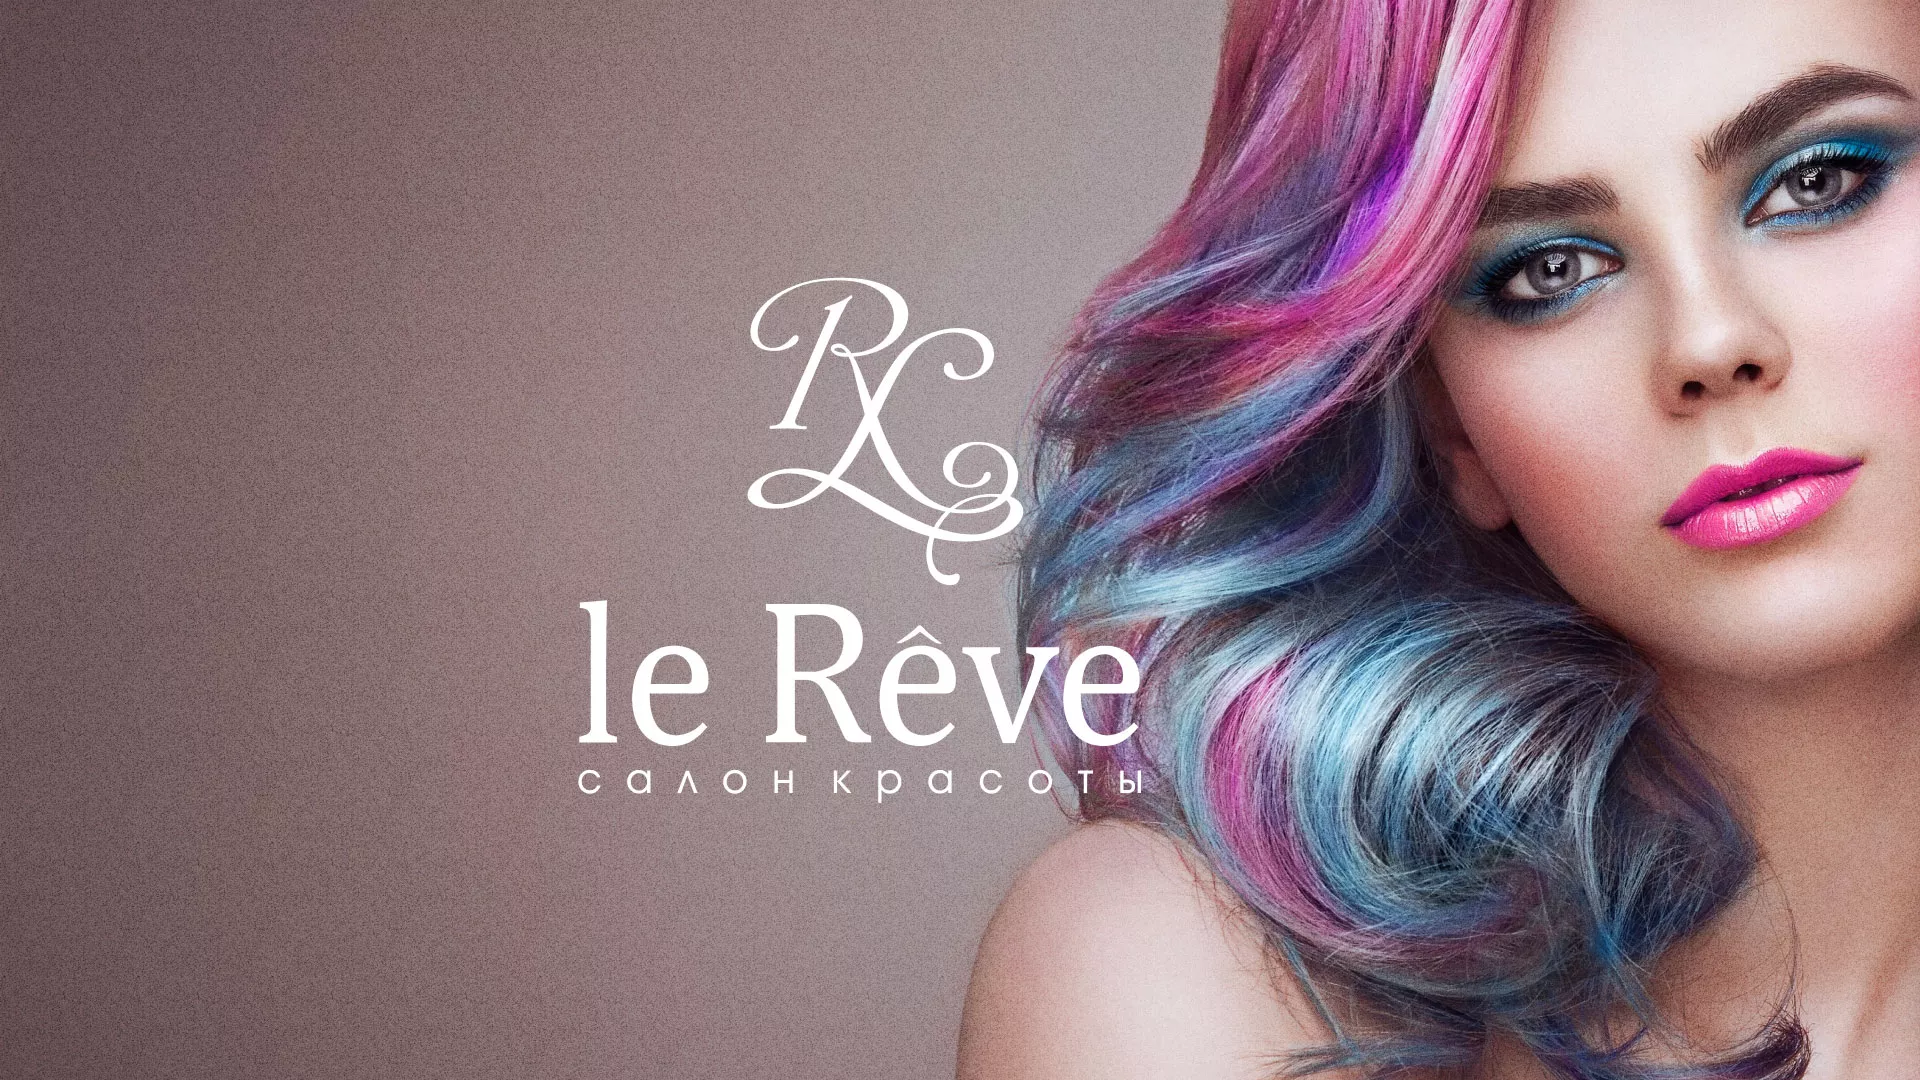 Создание сайта для салона красоты «Le Reve» в Усолье-Сибирском